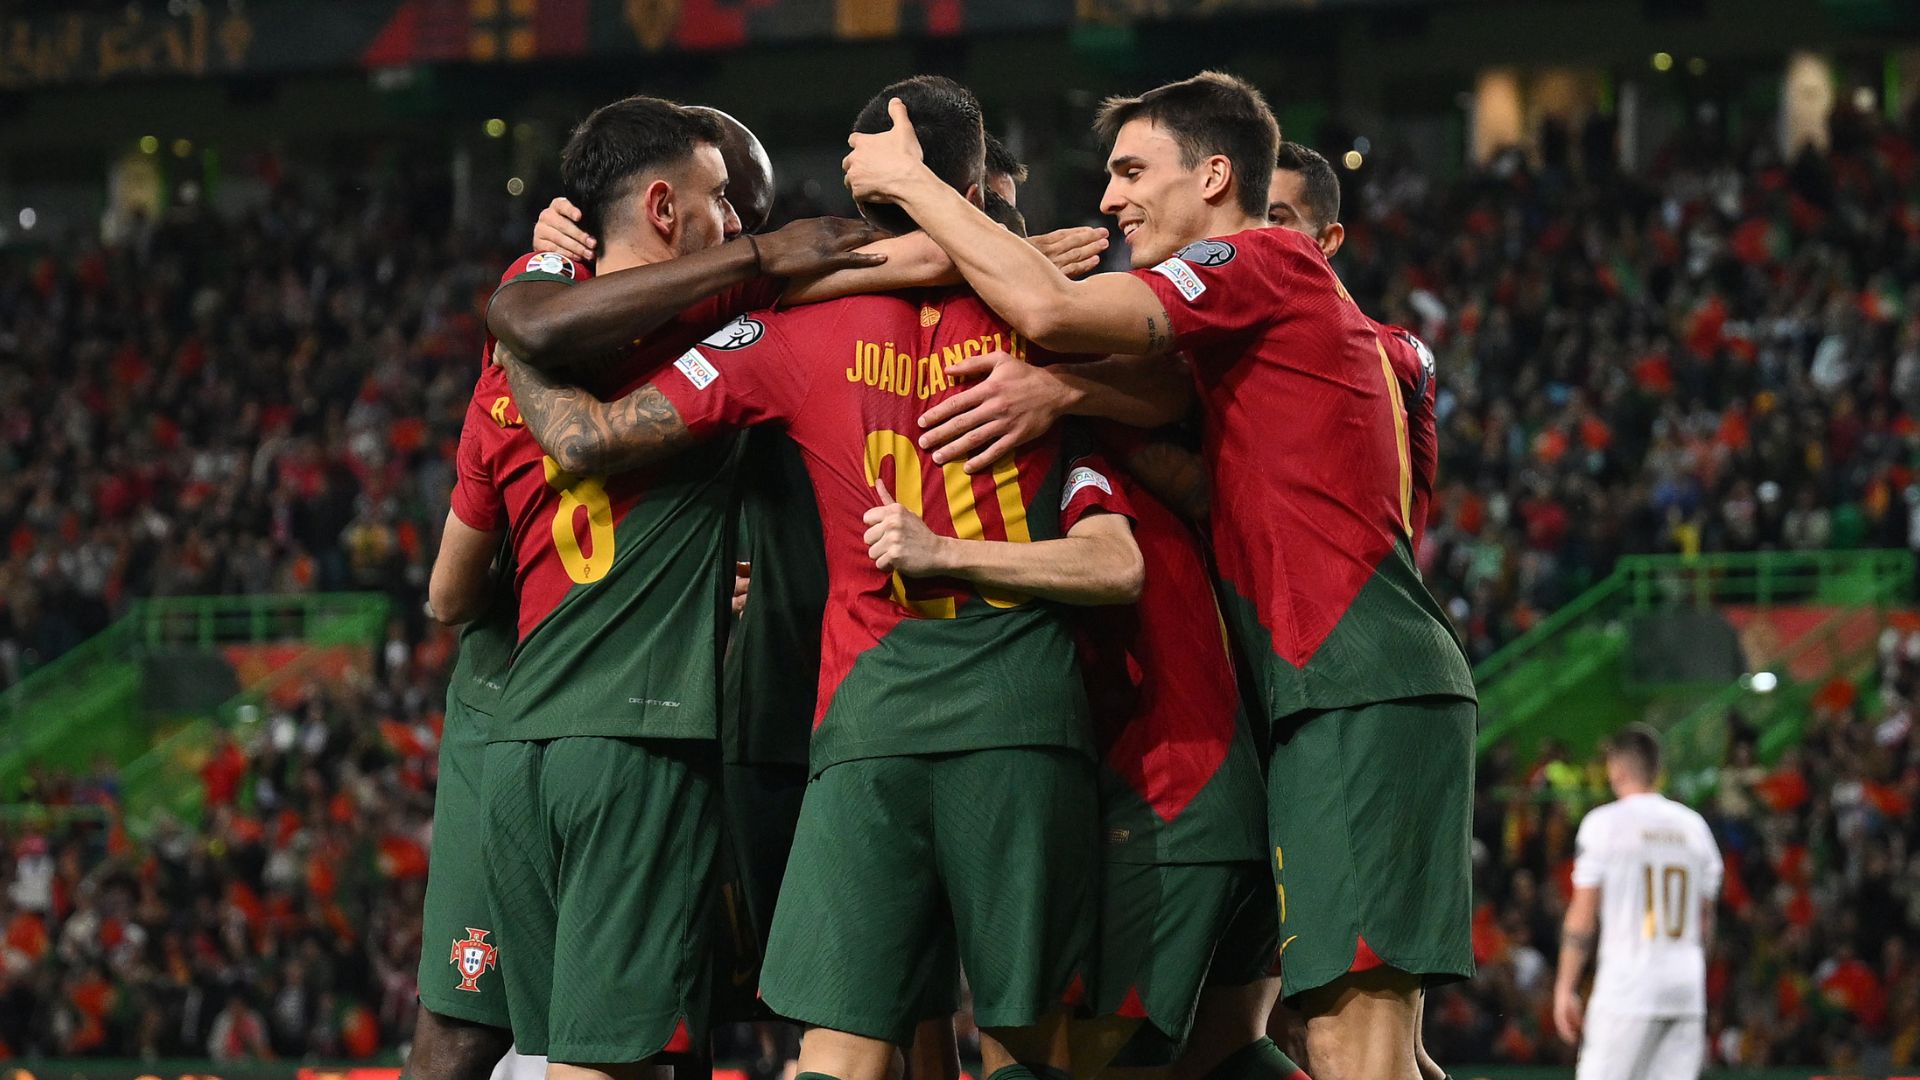 Portugal x Eslováquia: onde assistir, horário e escalações do jogo pelas  Eliminatórias da Euro - Lance!